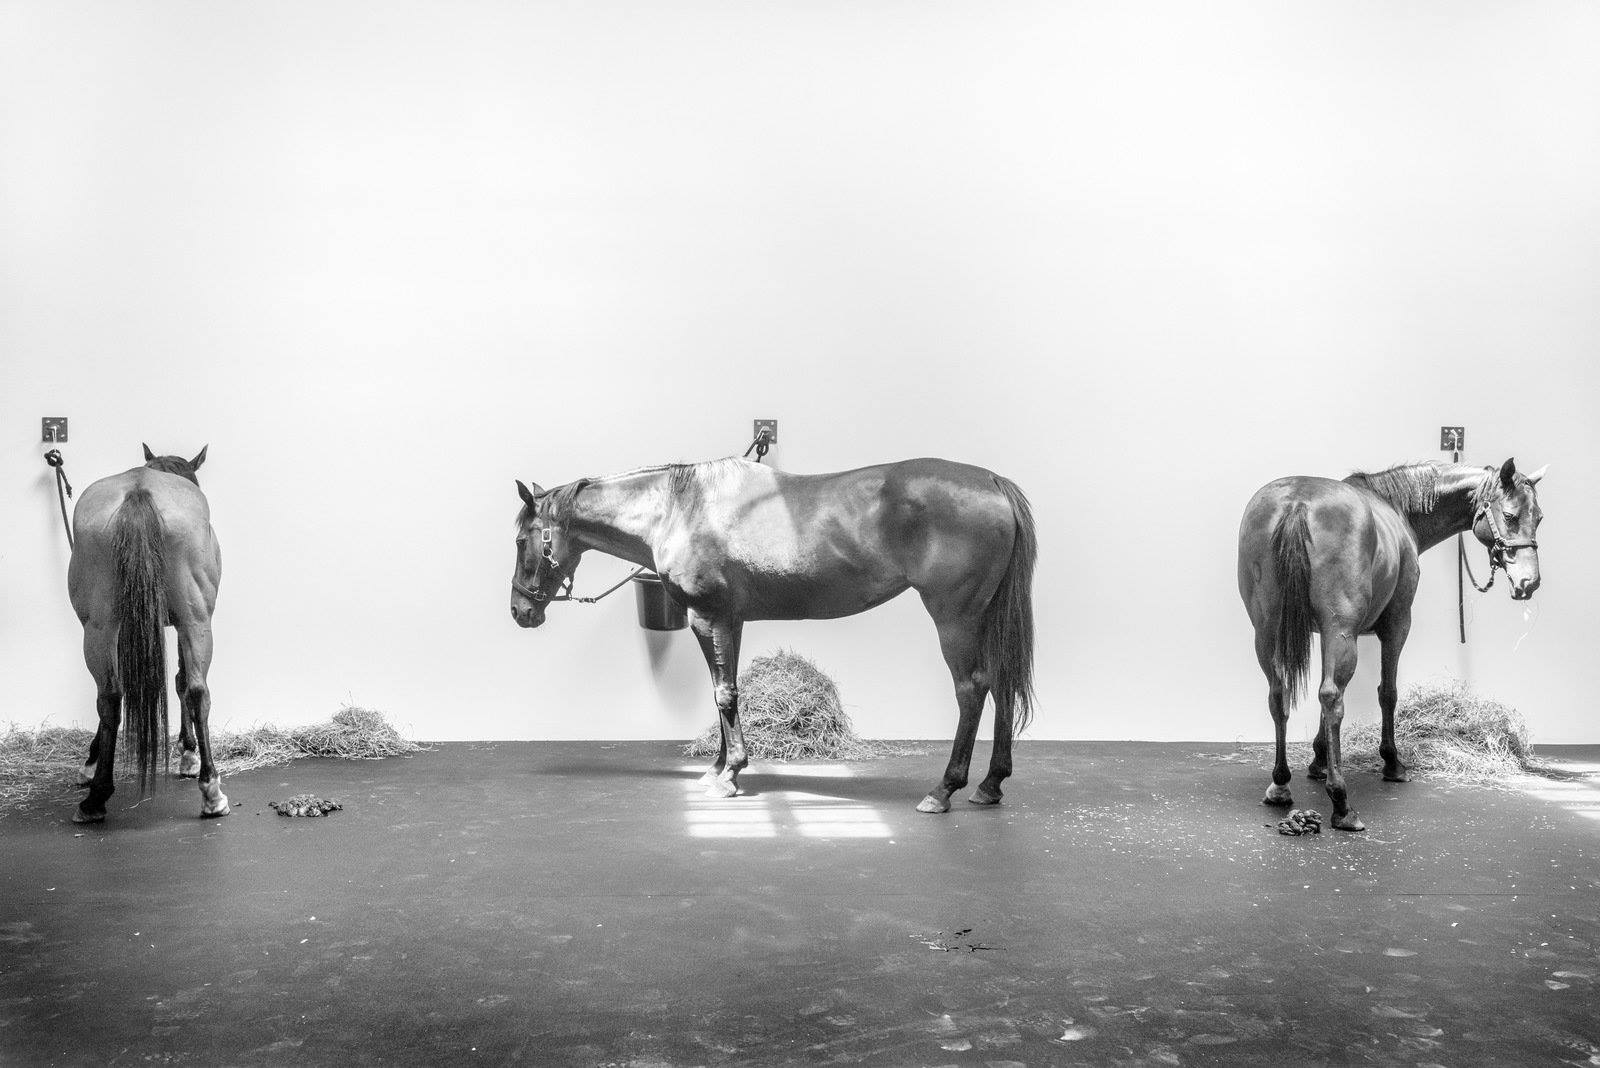 Jannis Kounellis, 12 Horses